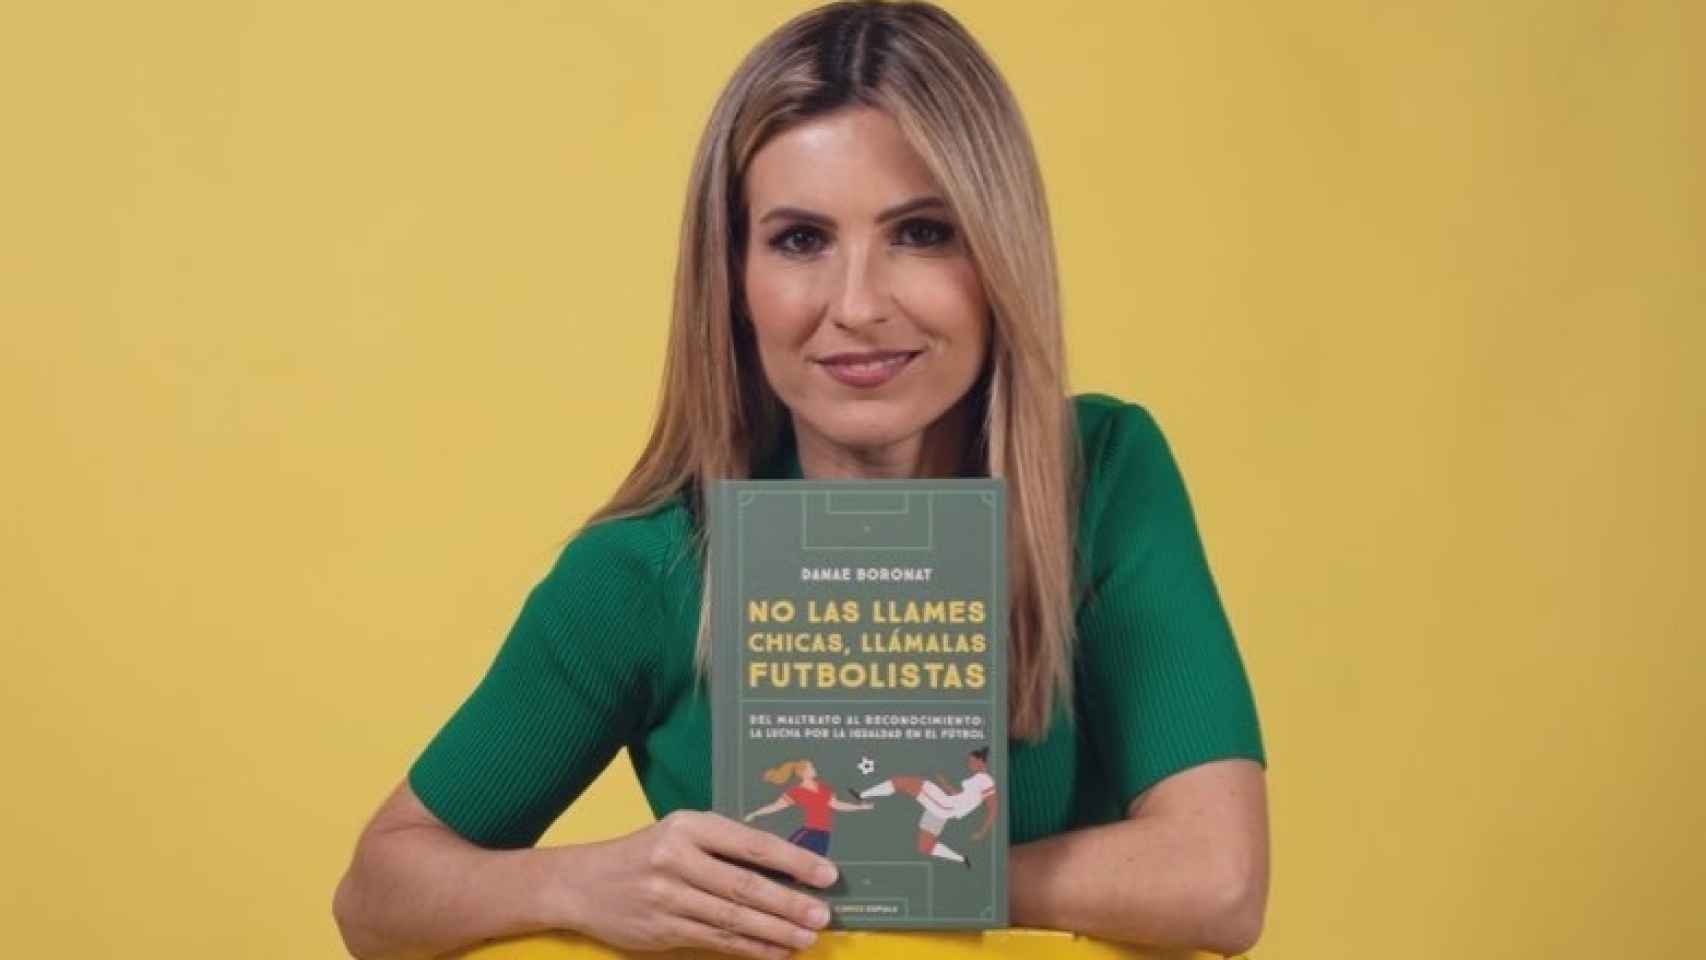 Danae Boronat con su libro 'No las llames chicas, llámalas futbolistas'.